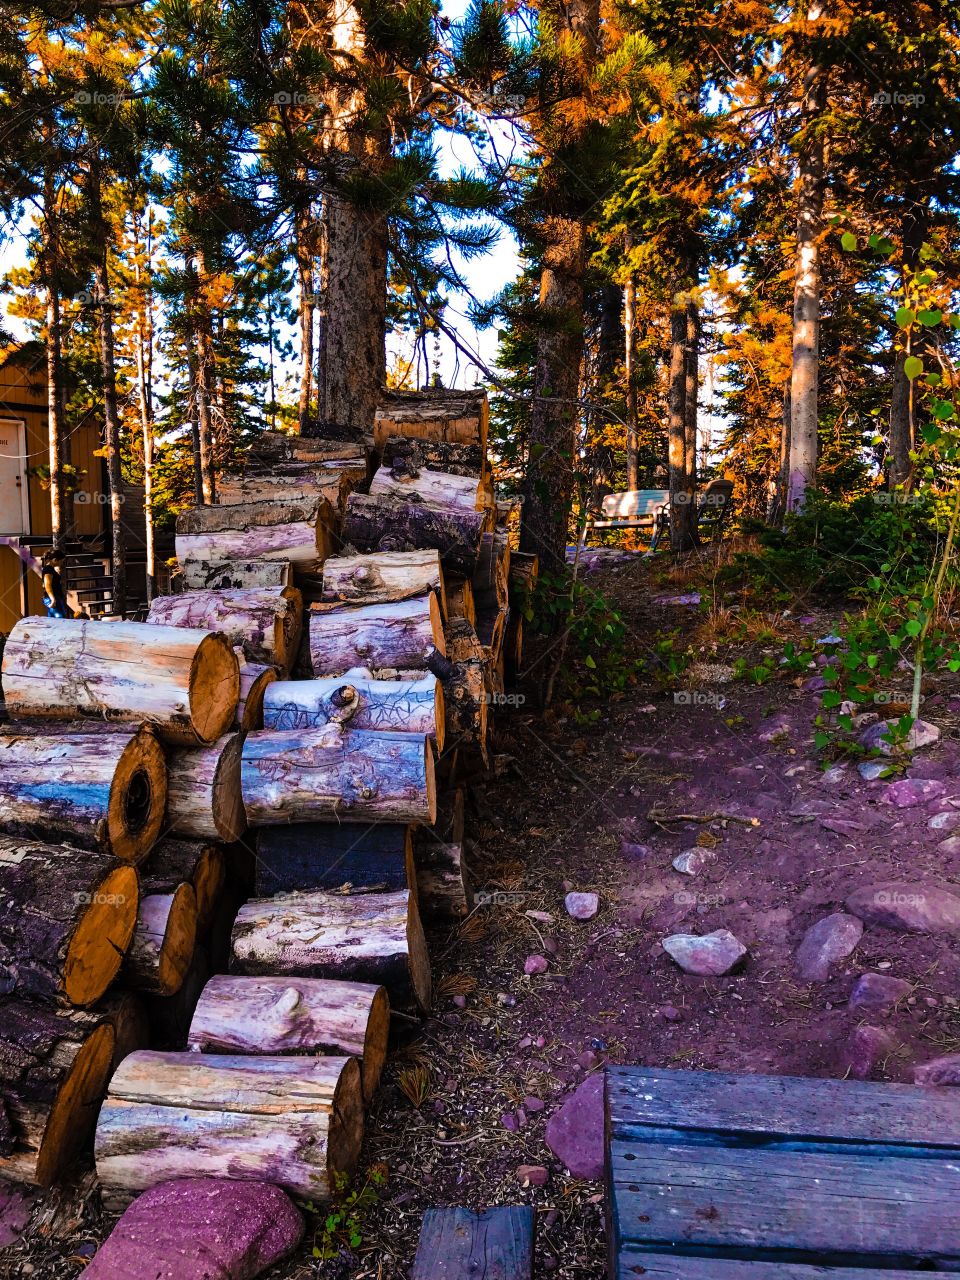 Wood pile